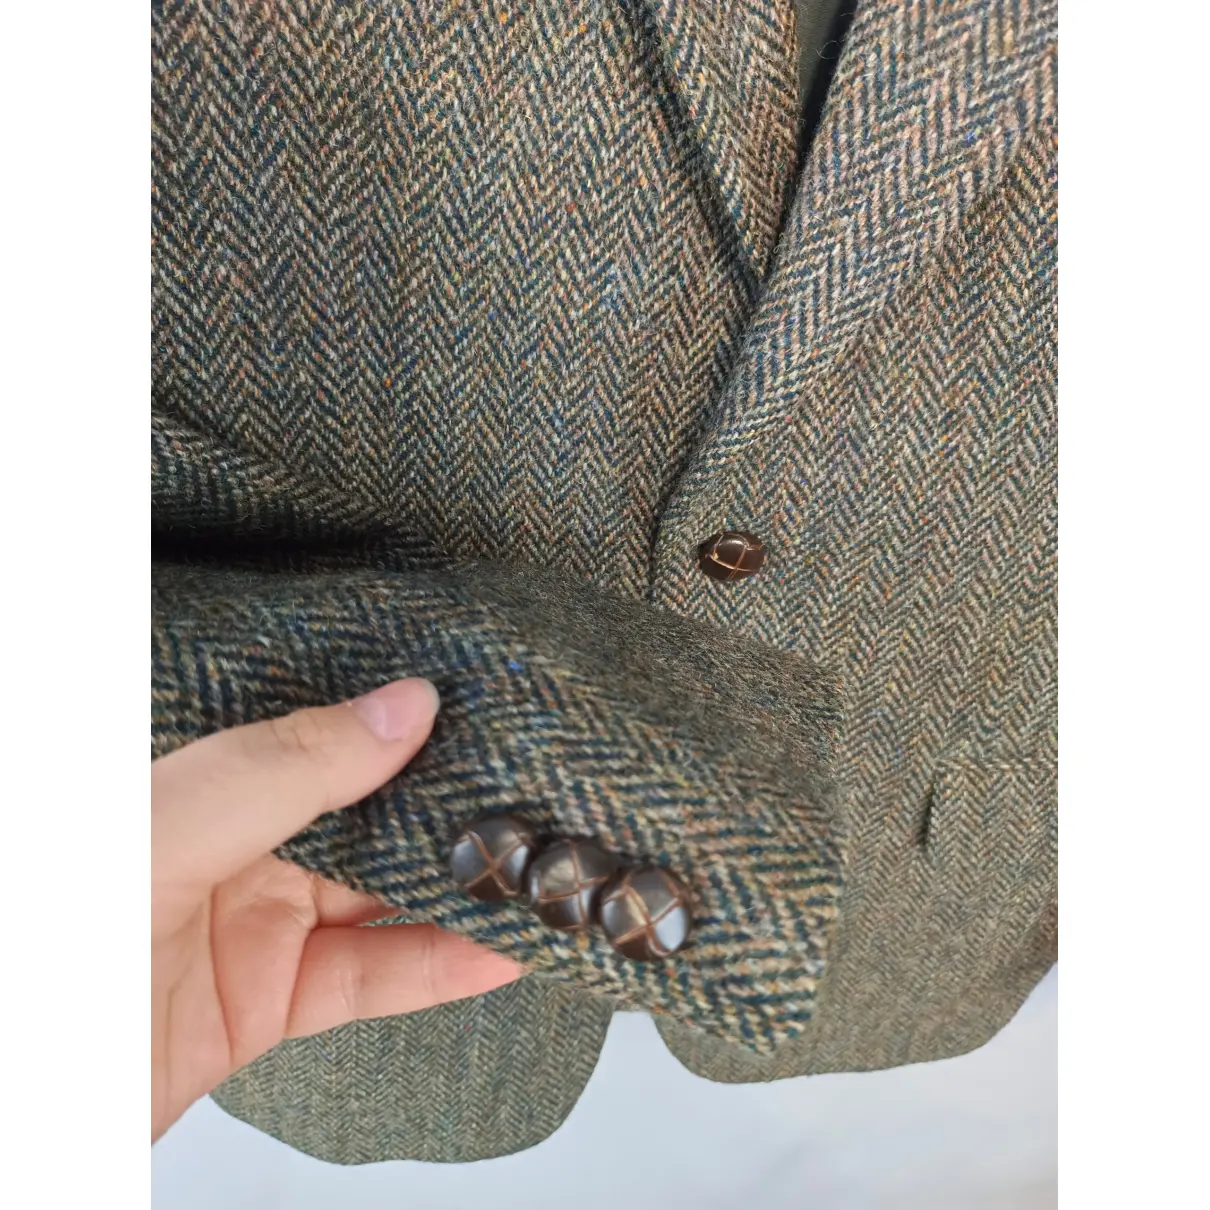 Buy HARRIS TWEED Tweed jacket online - Vintage